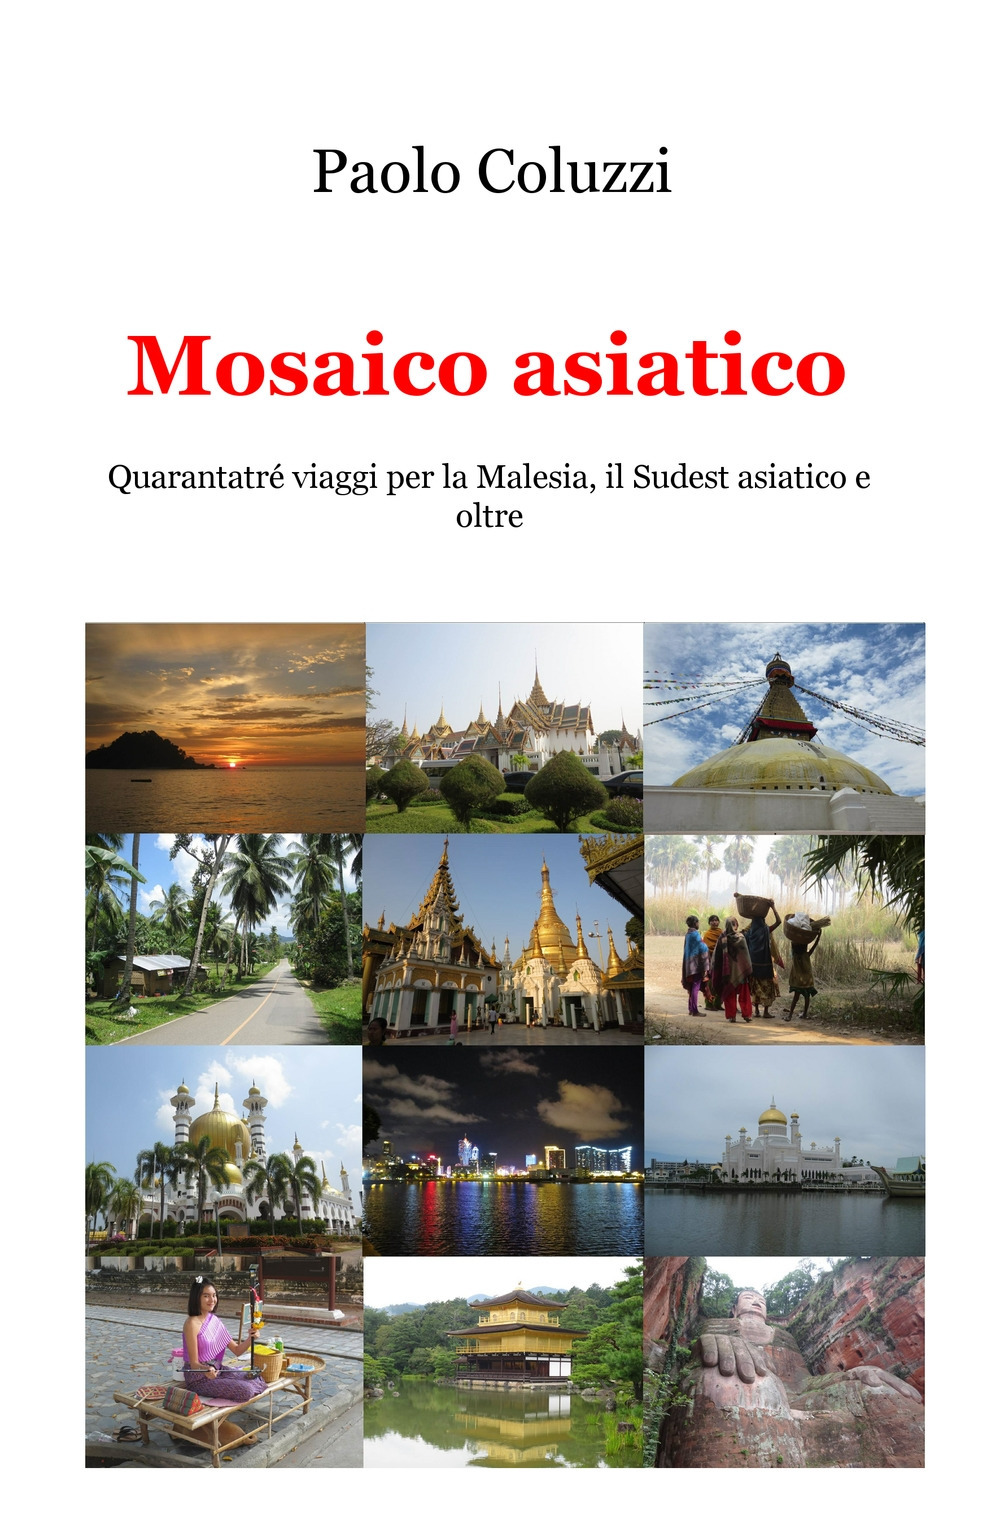 Image of Mosaico asiatico. Quarantatré viaggi per la Malesia, il Sudest asiatico e oltre